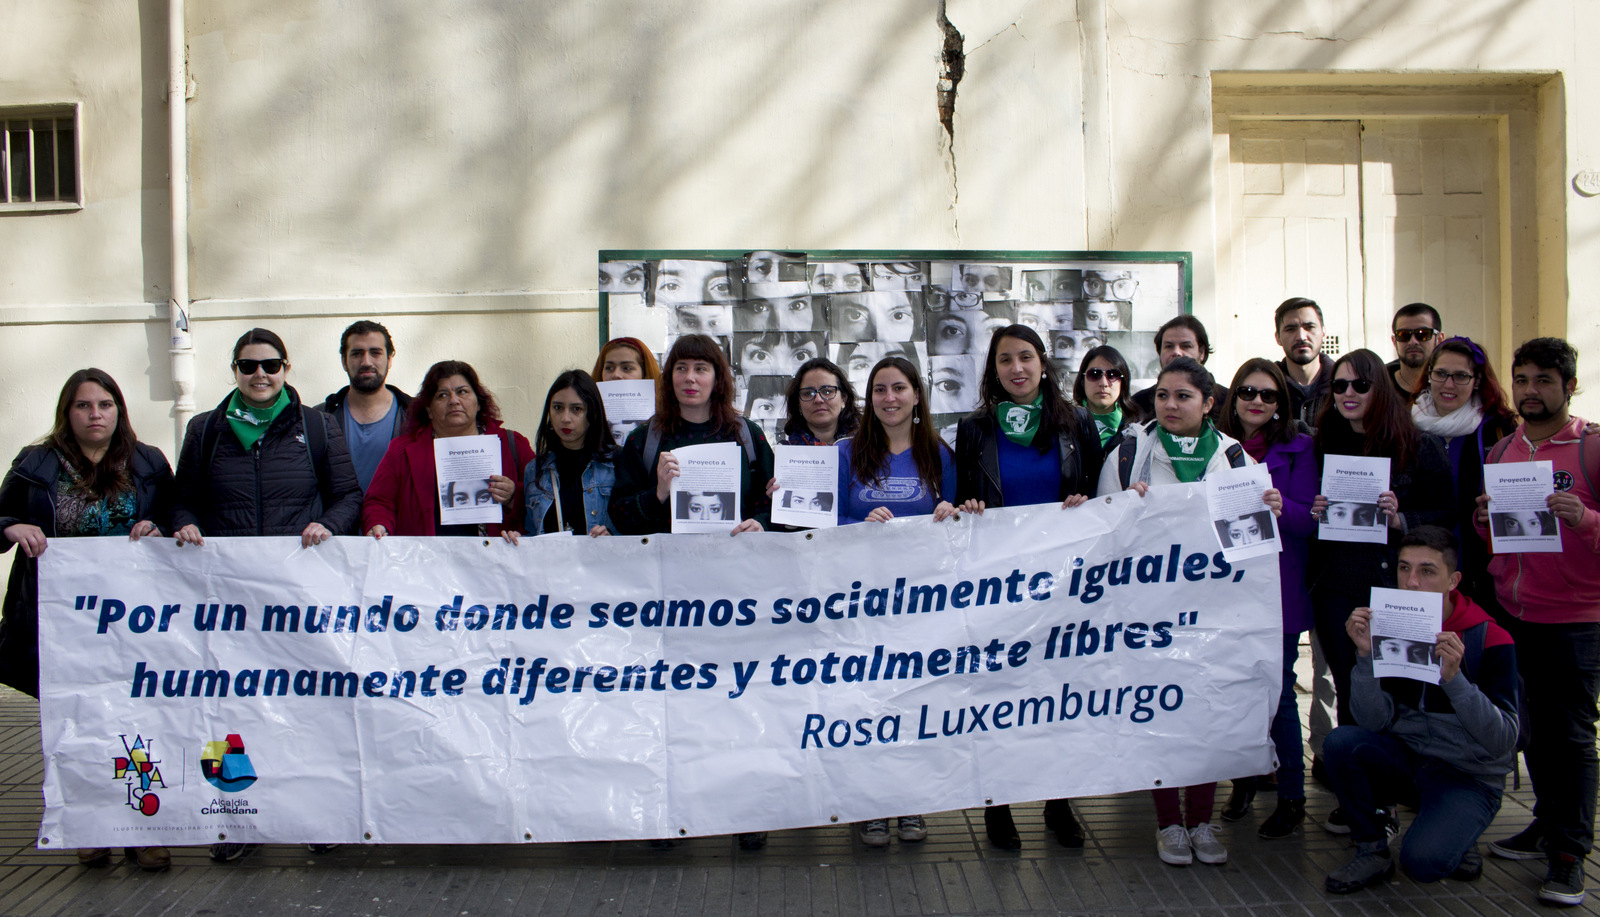 Grupos feministas y Dideco porteña rechazan pañoleta “salvemos las dos vidas” instalada en el frontis de la intendencia